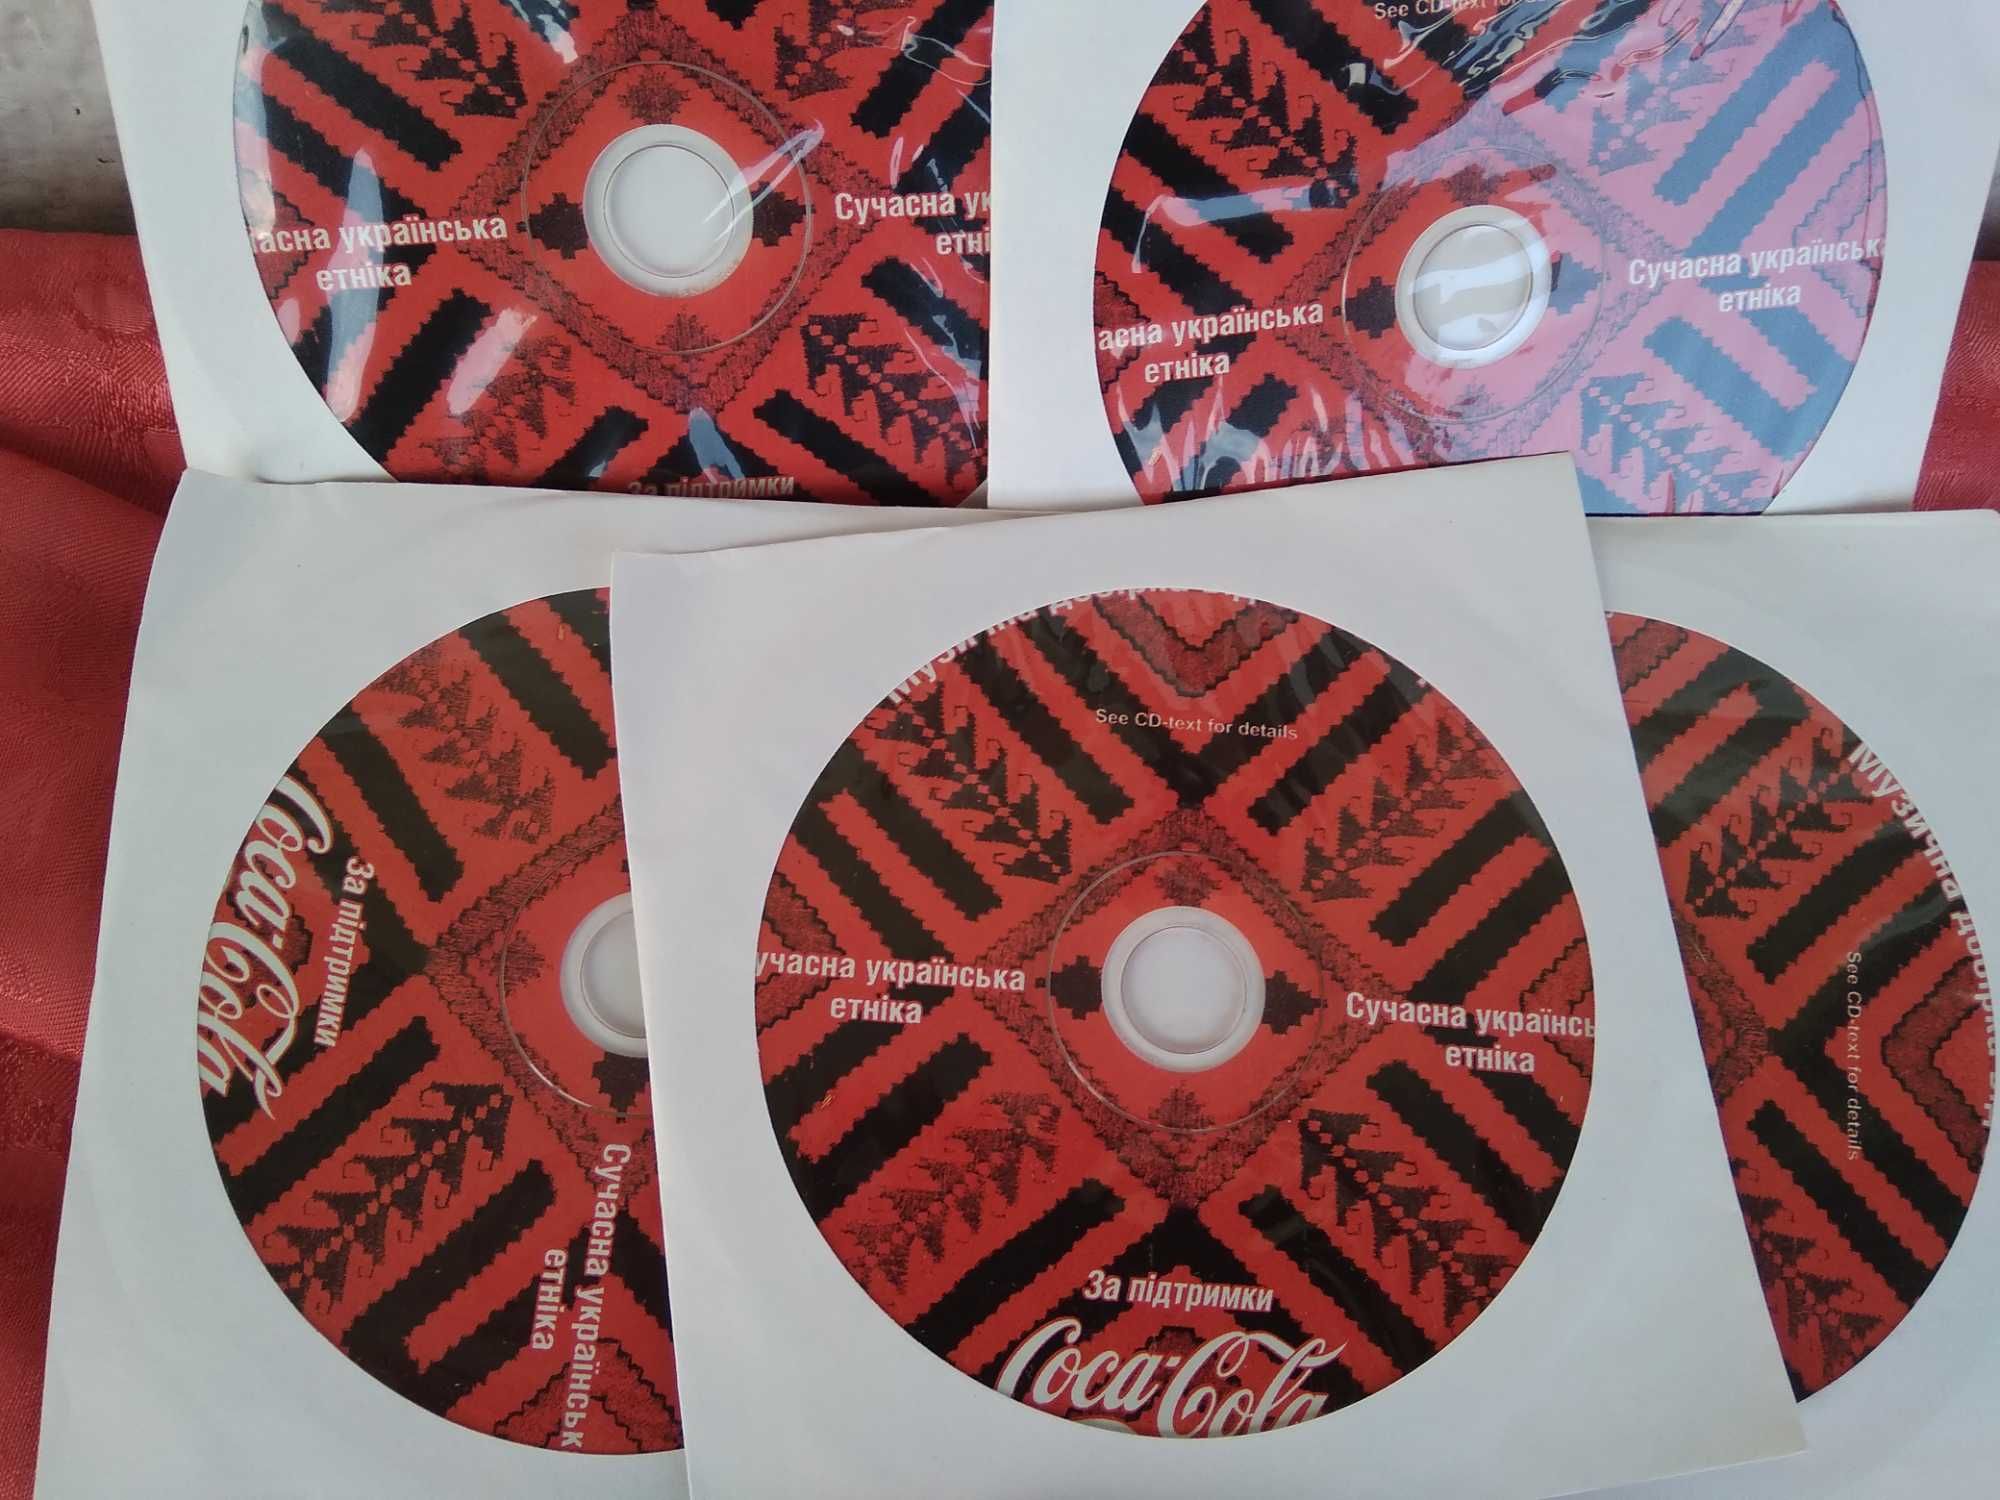 Coca-Cola Сумка для CD дисків + Сучасна українська етніка